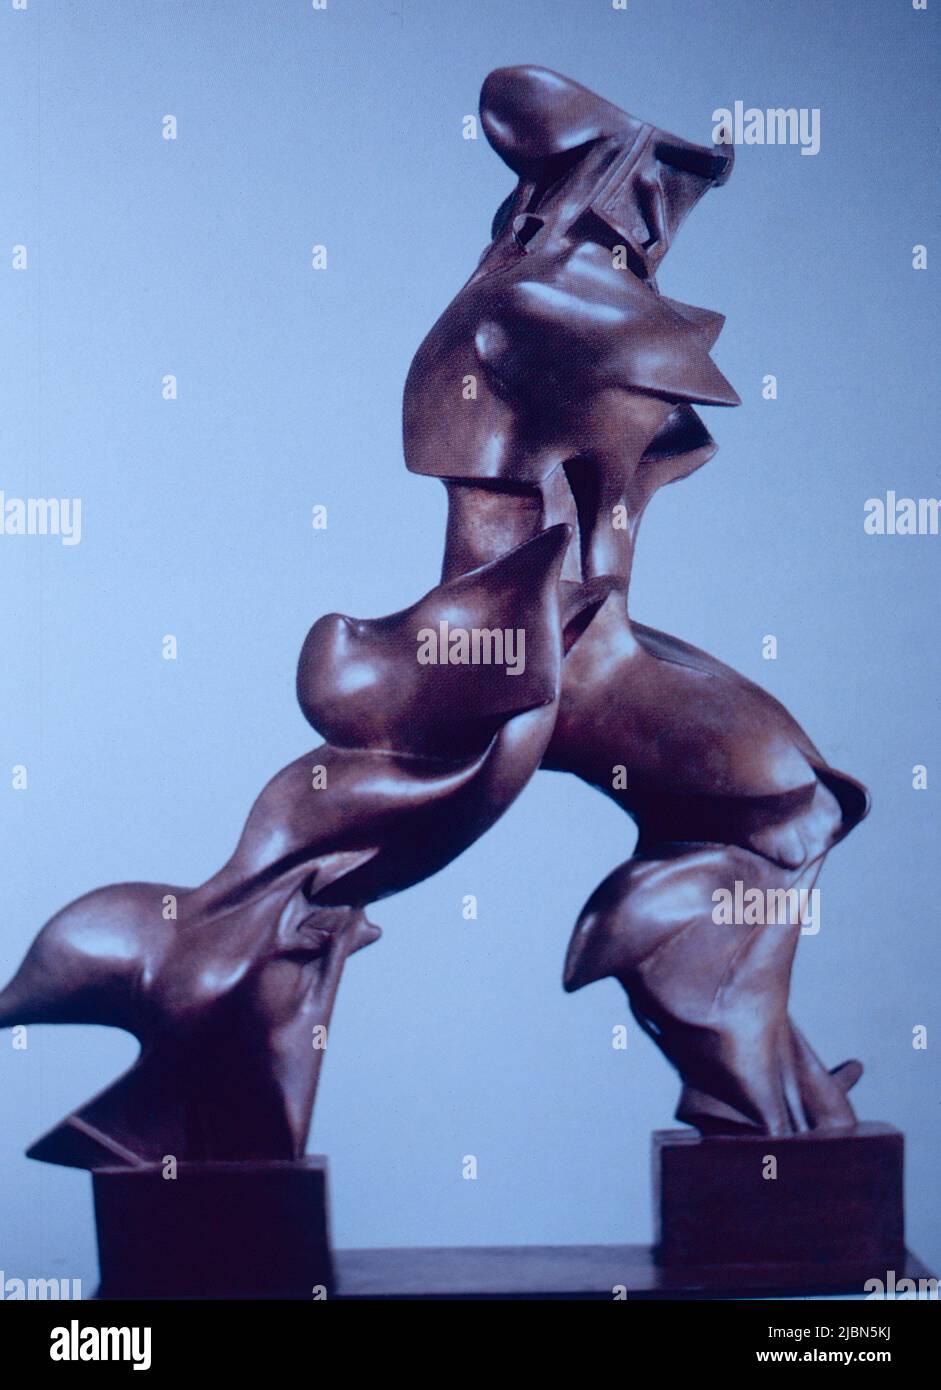 Formas únicas de continuidad en el espacio, escultura en bronce del artista italiano Umberto Boccioni, 1913 Foto de stock